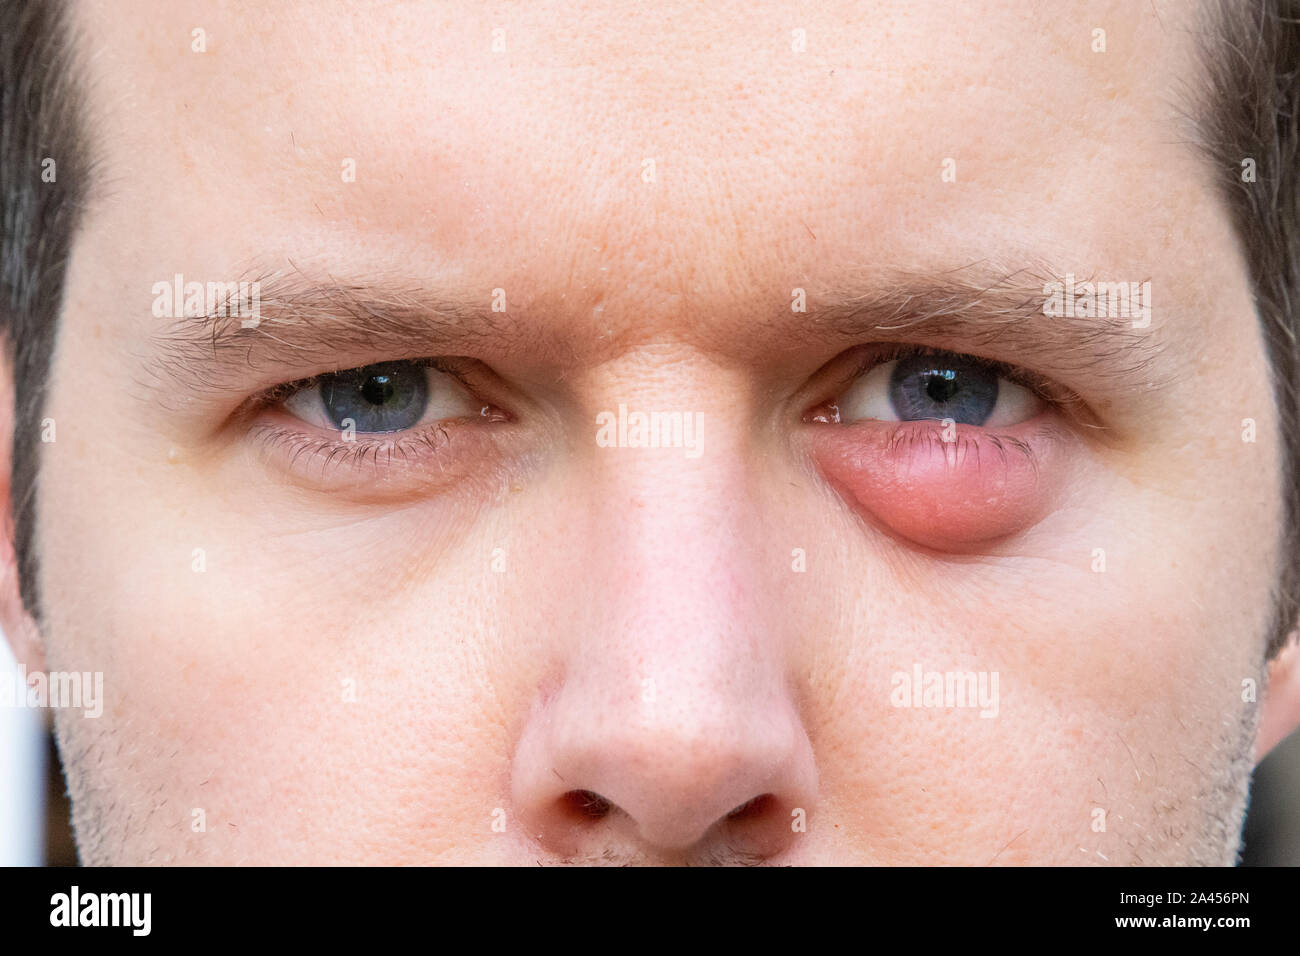 Un uomo con una palpebra gonfia a causa di una infezione. Foto Stock